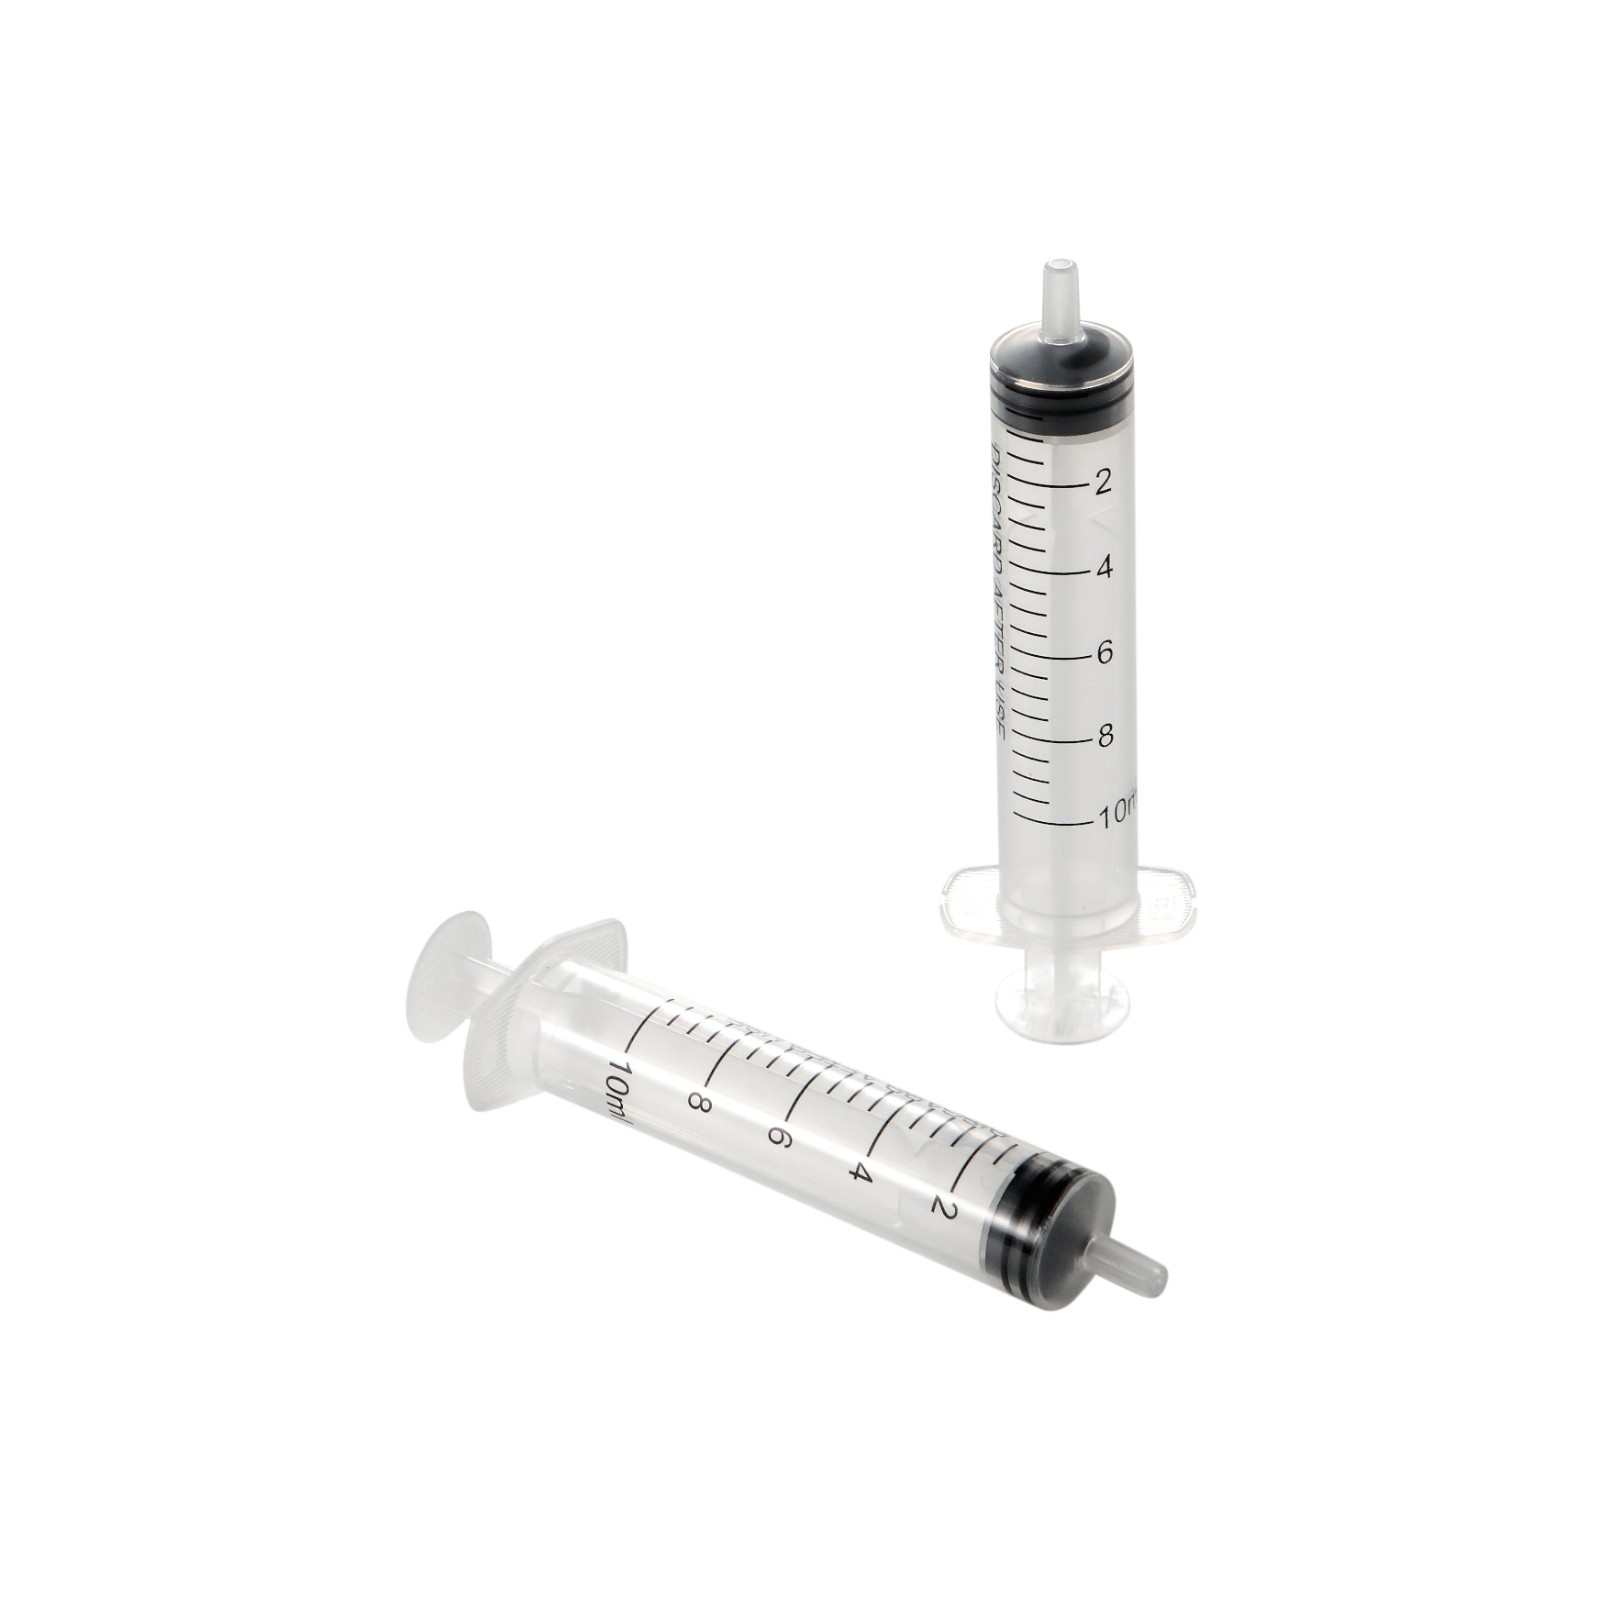 10ml Luer Slip Medical Disposable Syringe without Needle